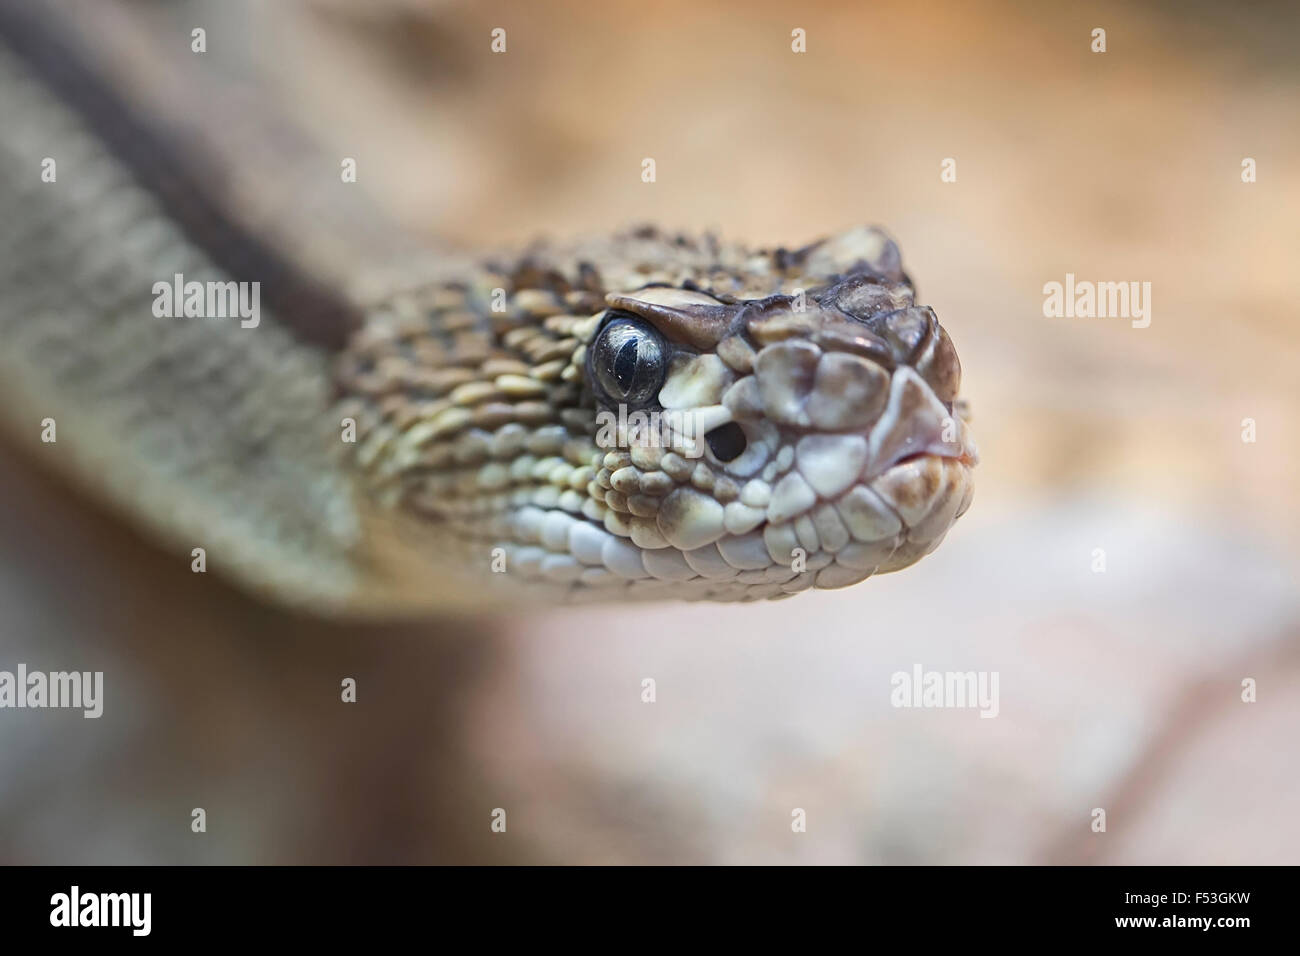 Un serpent, close-up Banque D'Images